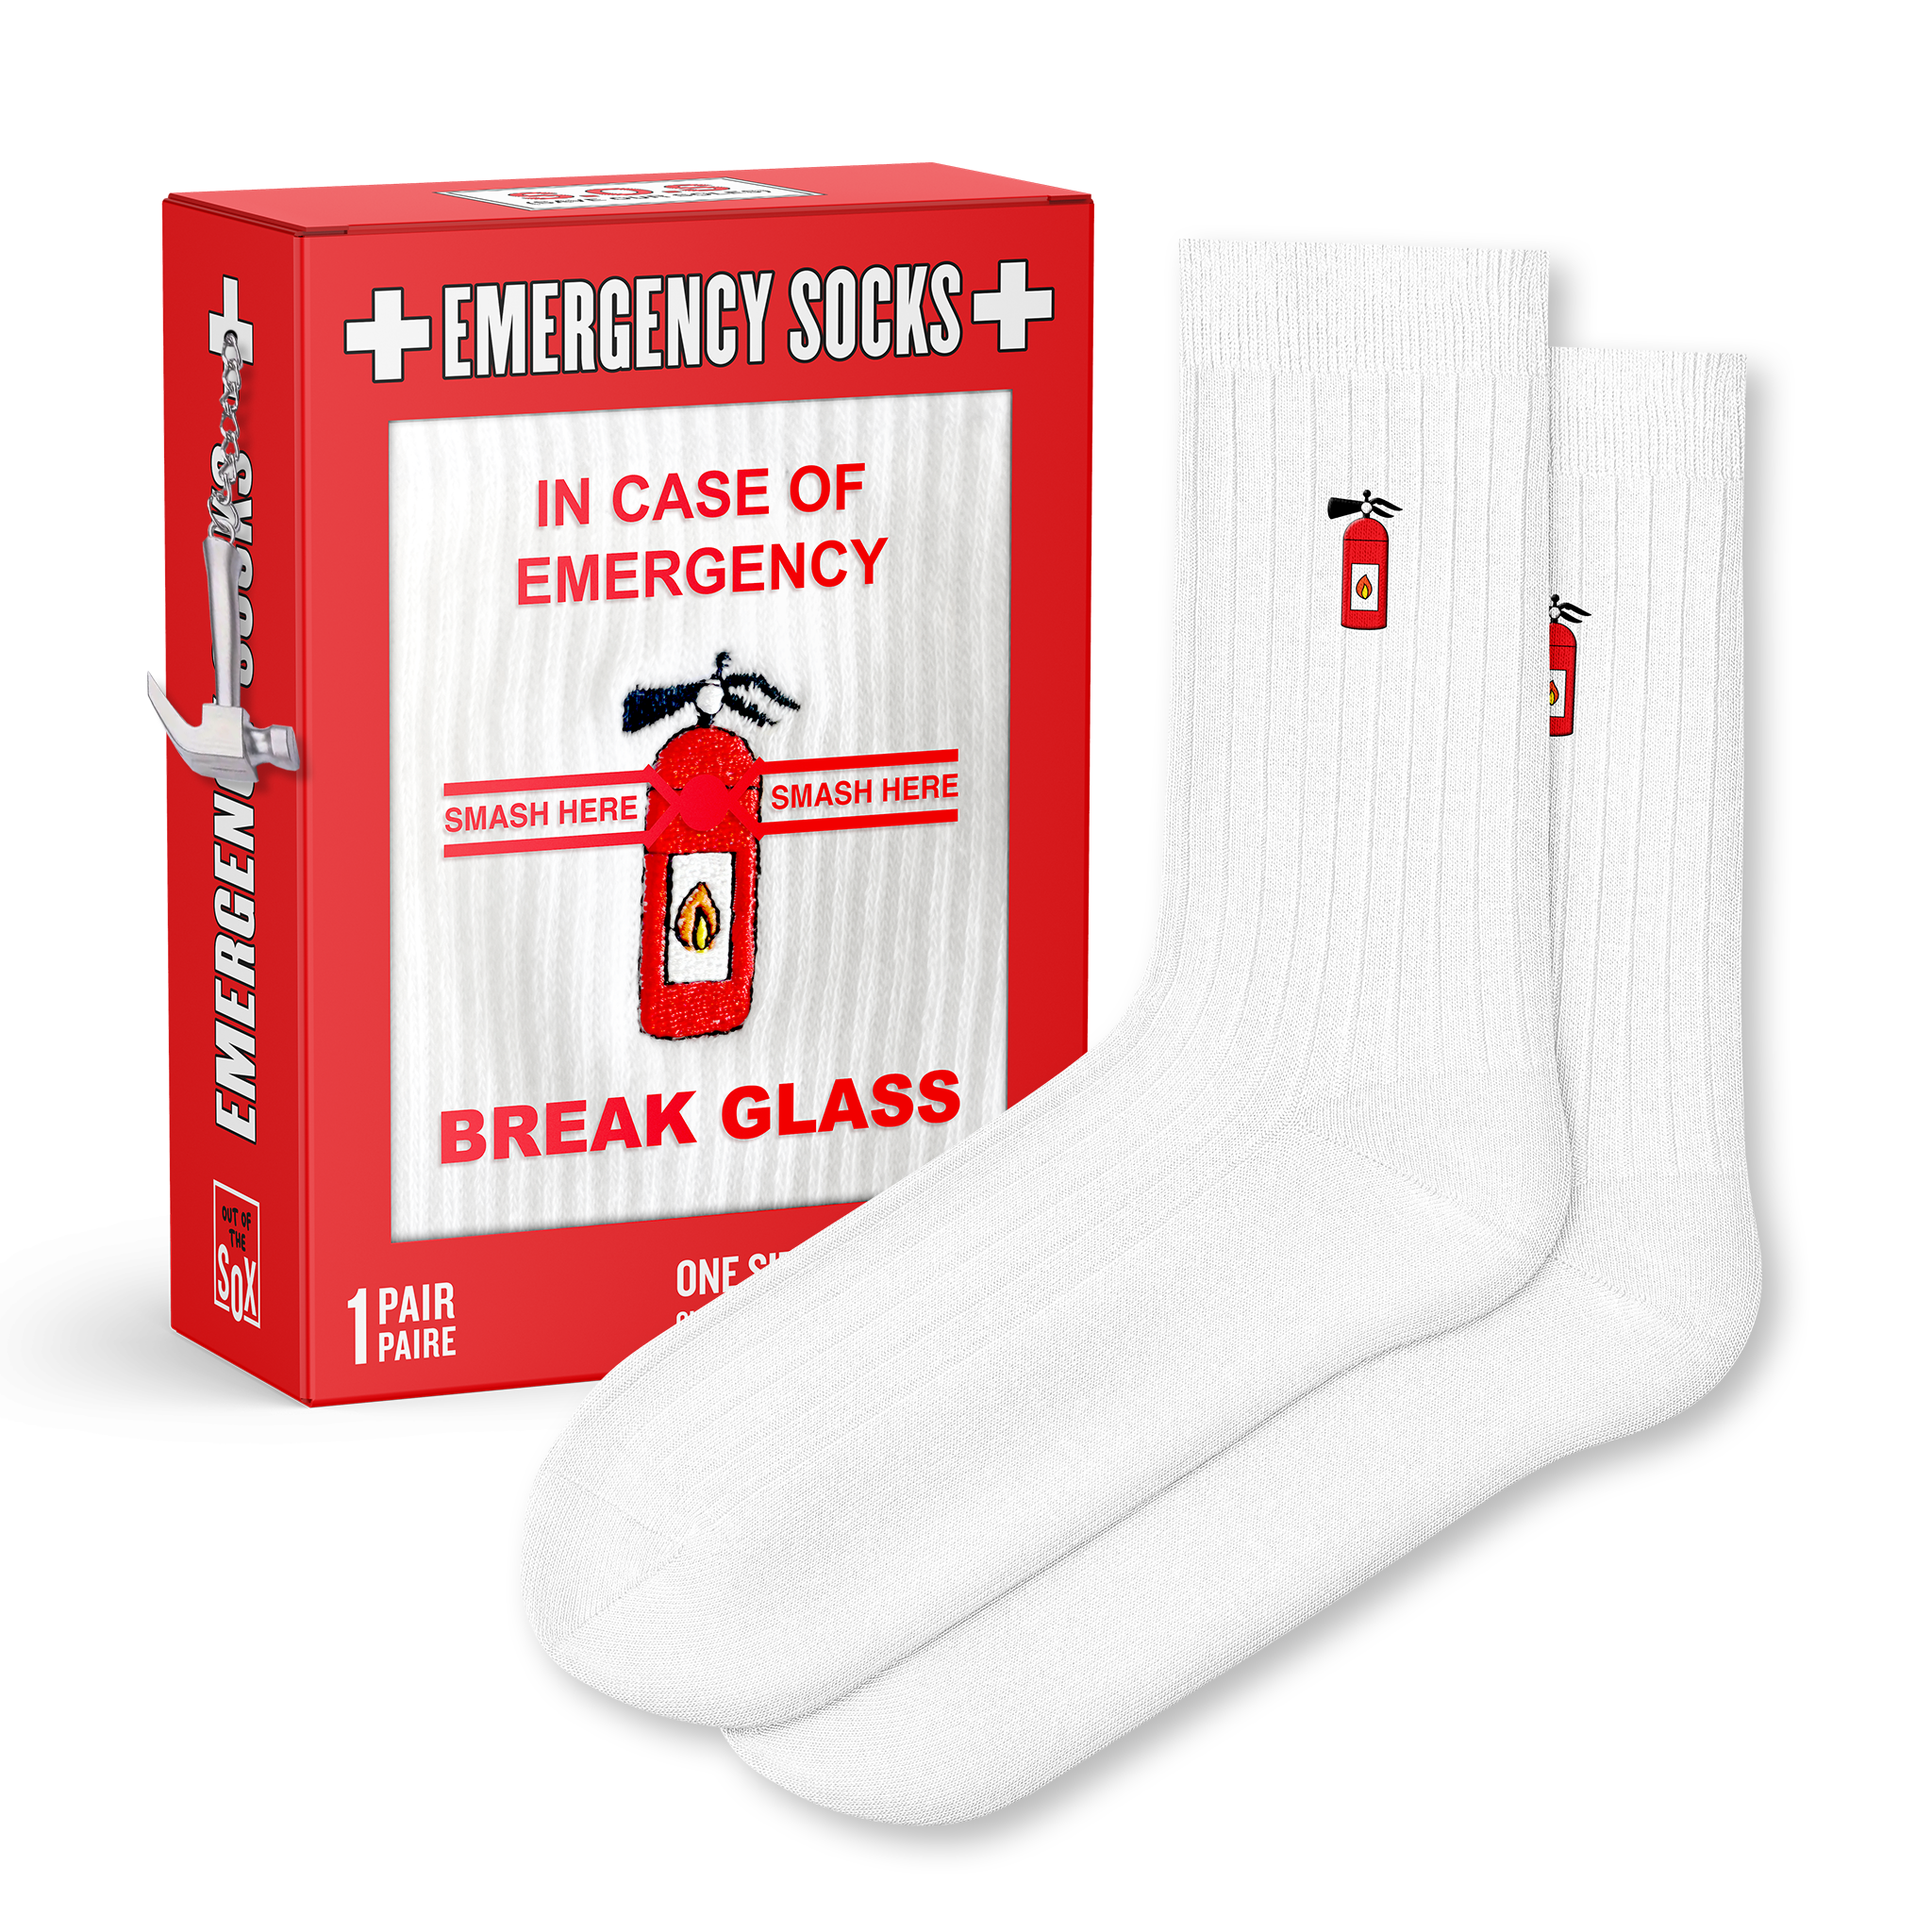 In Case Of Emergency Socks